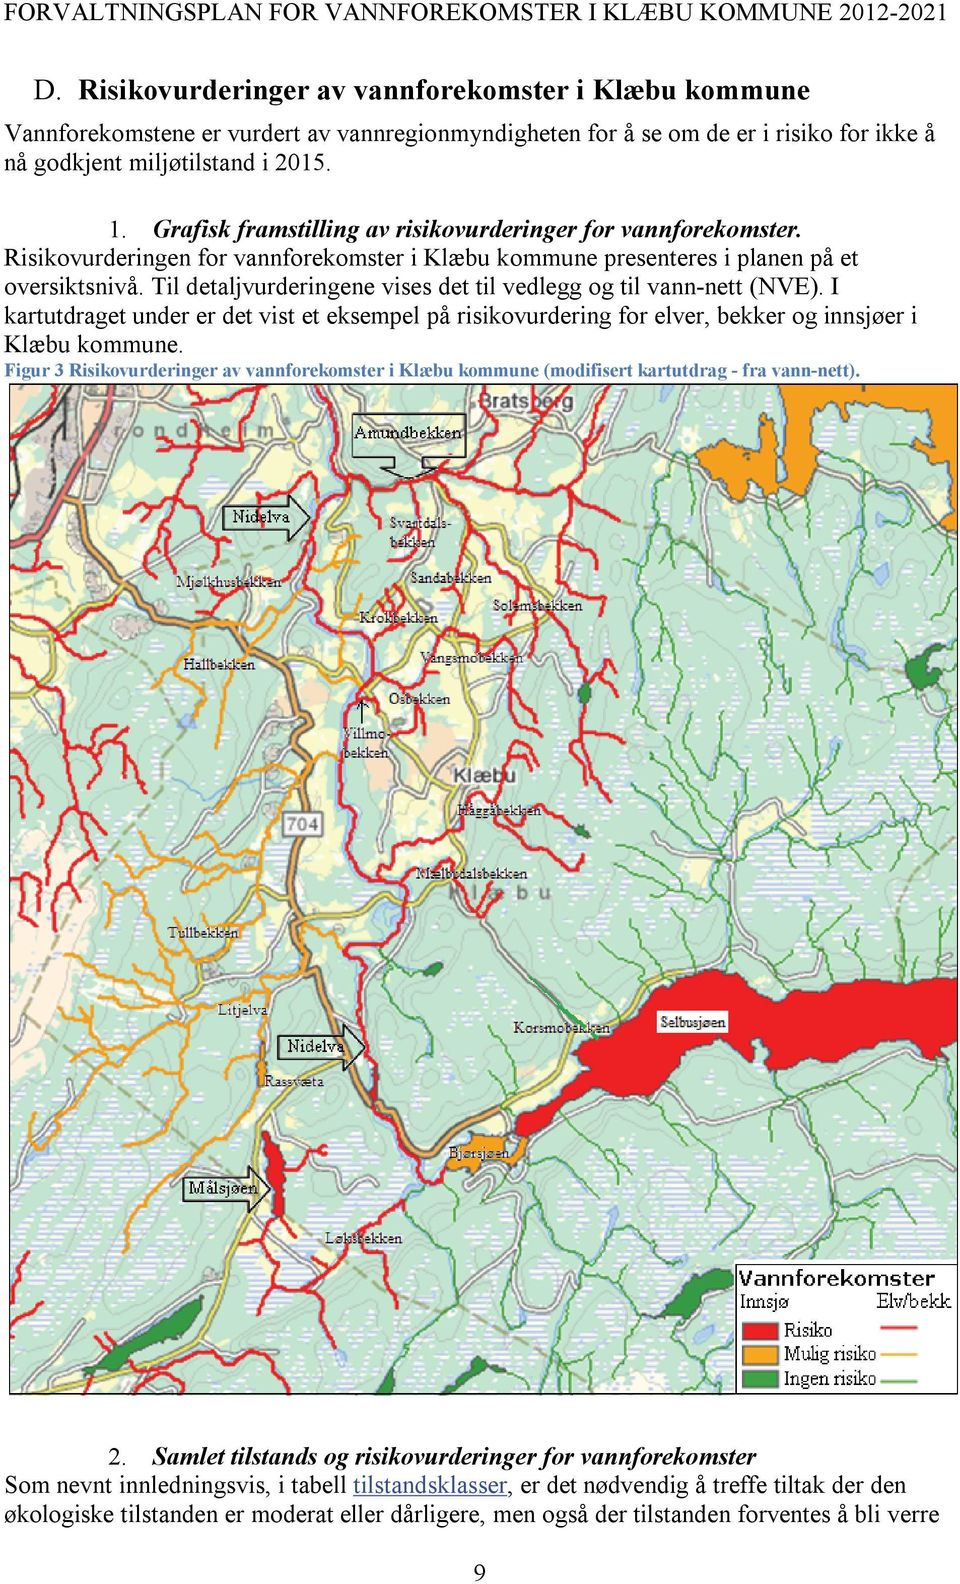 Til detaljvurderingene vises det til vedlegg og til vann-nett (NVE). I kartutdraget under er det vist et eksempel på risikovurdering for elver, bekker og innsjøer i Klæbu kommune.